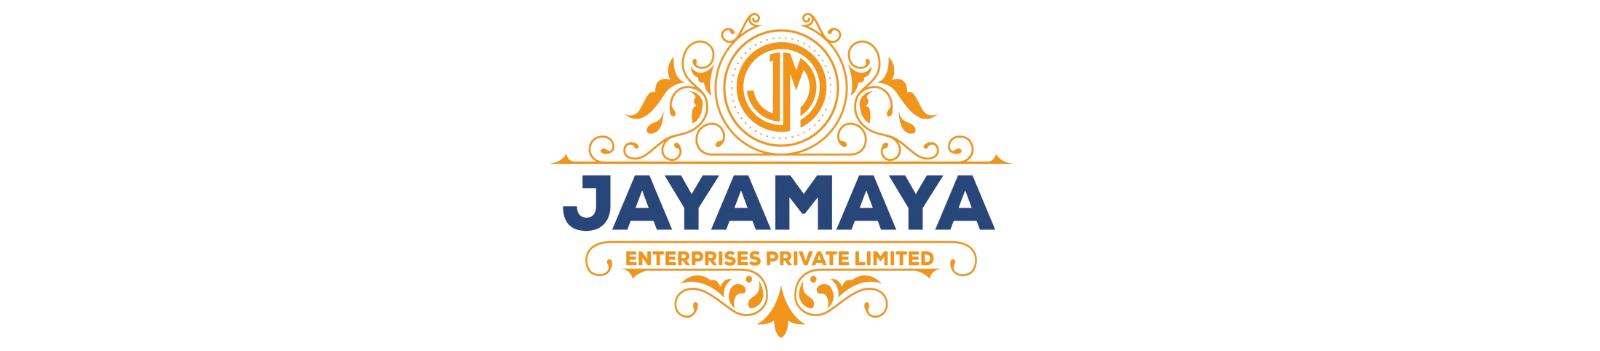 Jaya Maya